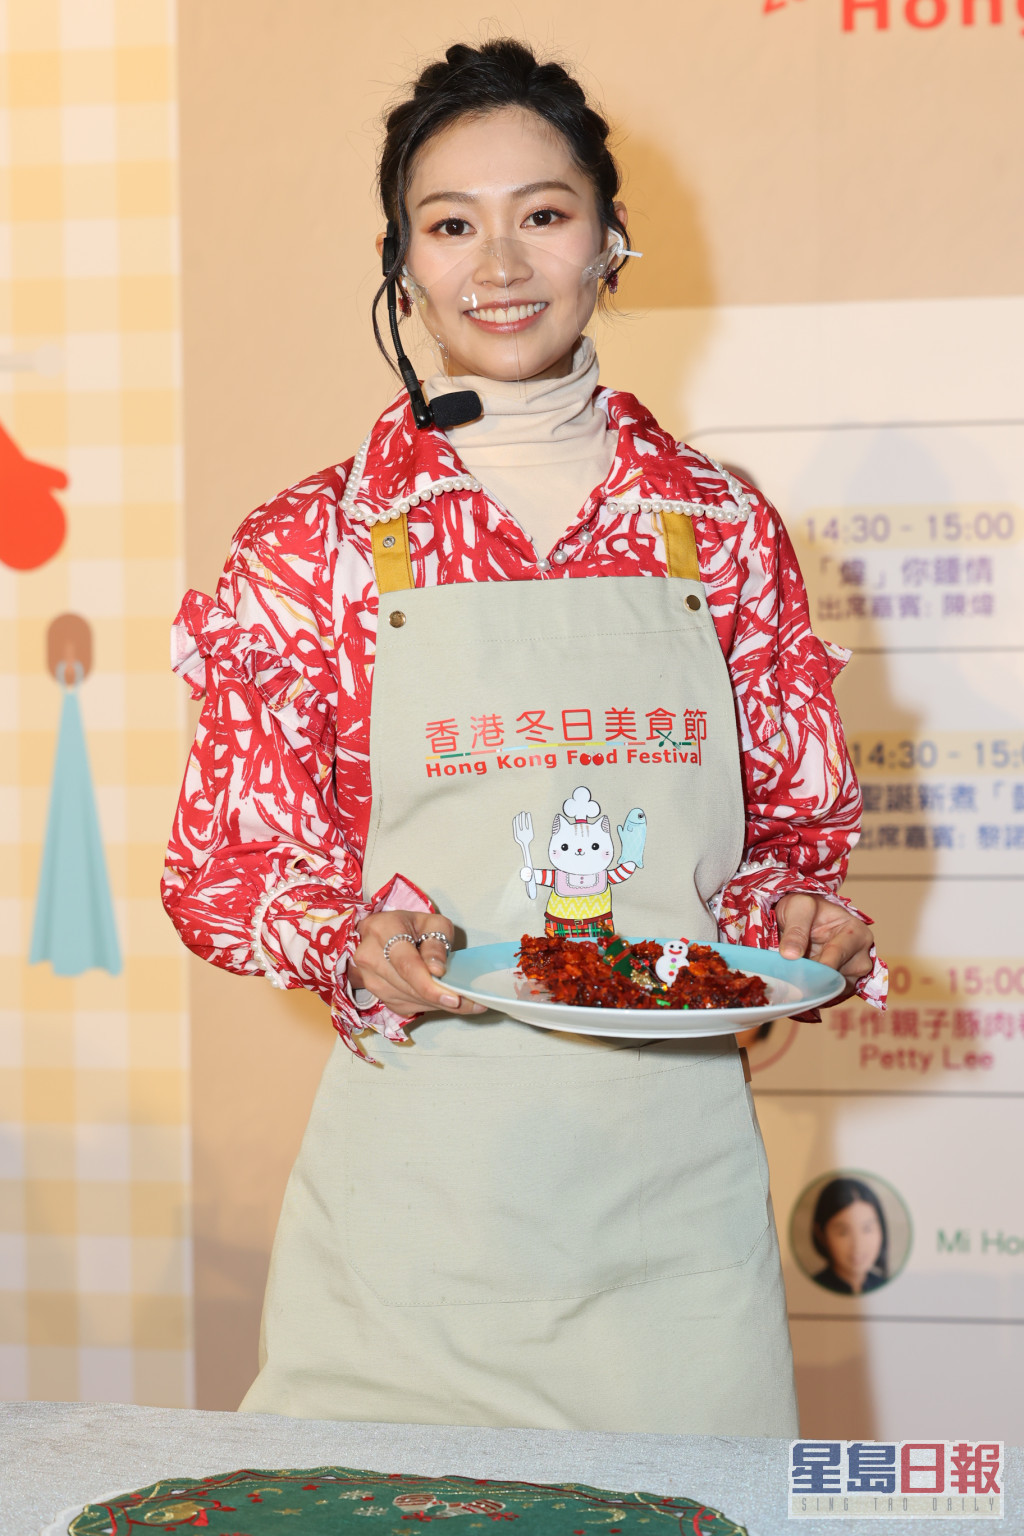 郭柏妍想参与《美女厨房》类似的节目。